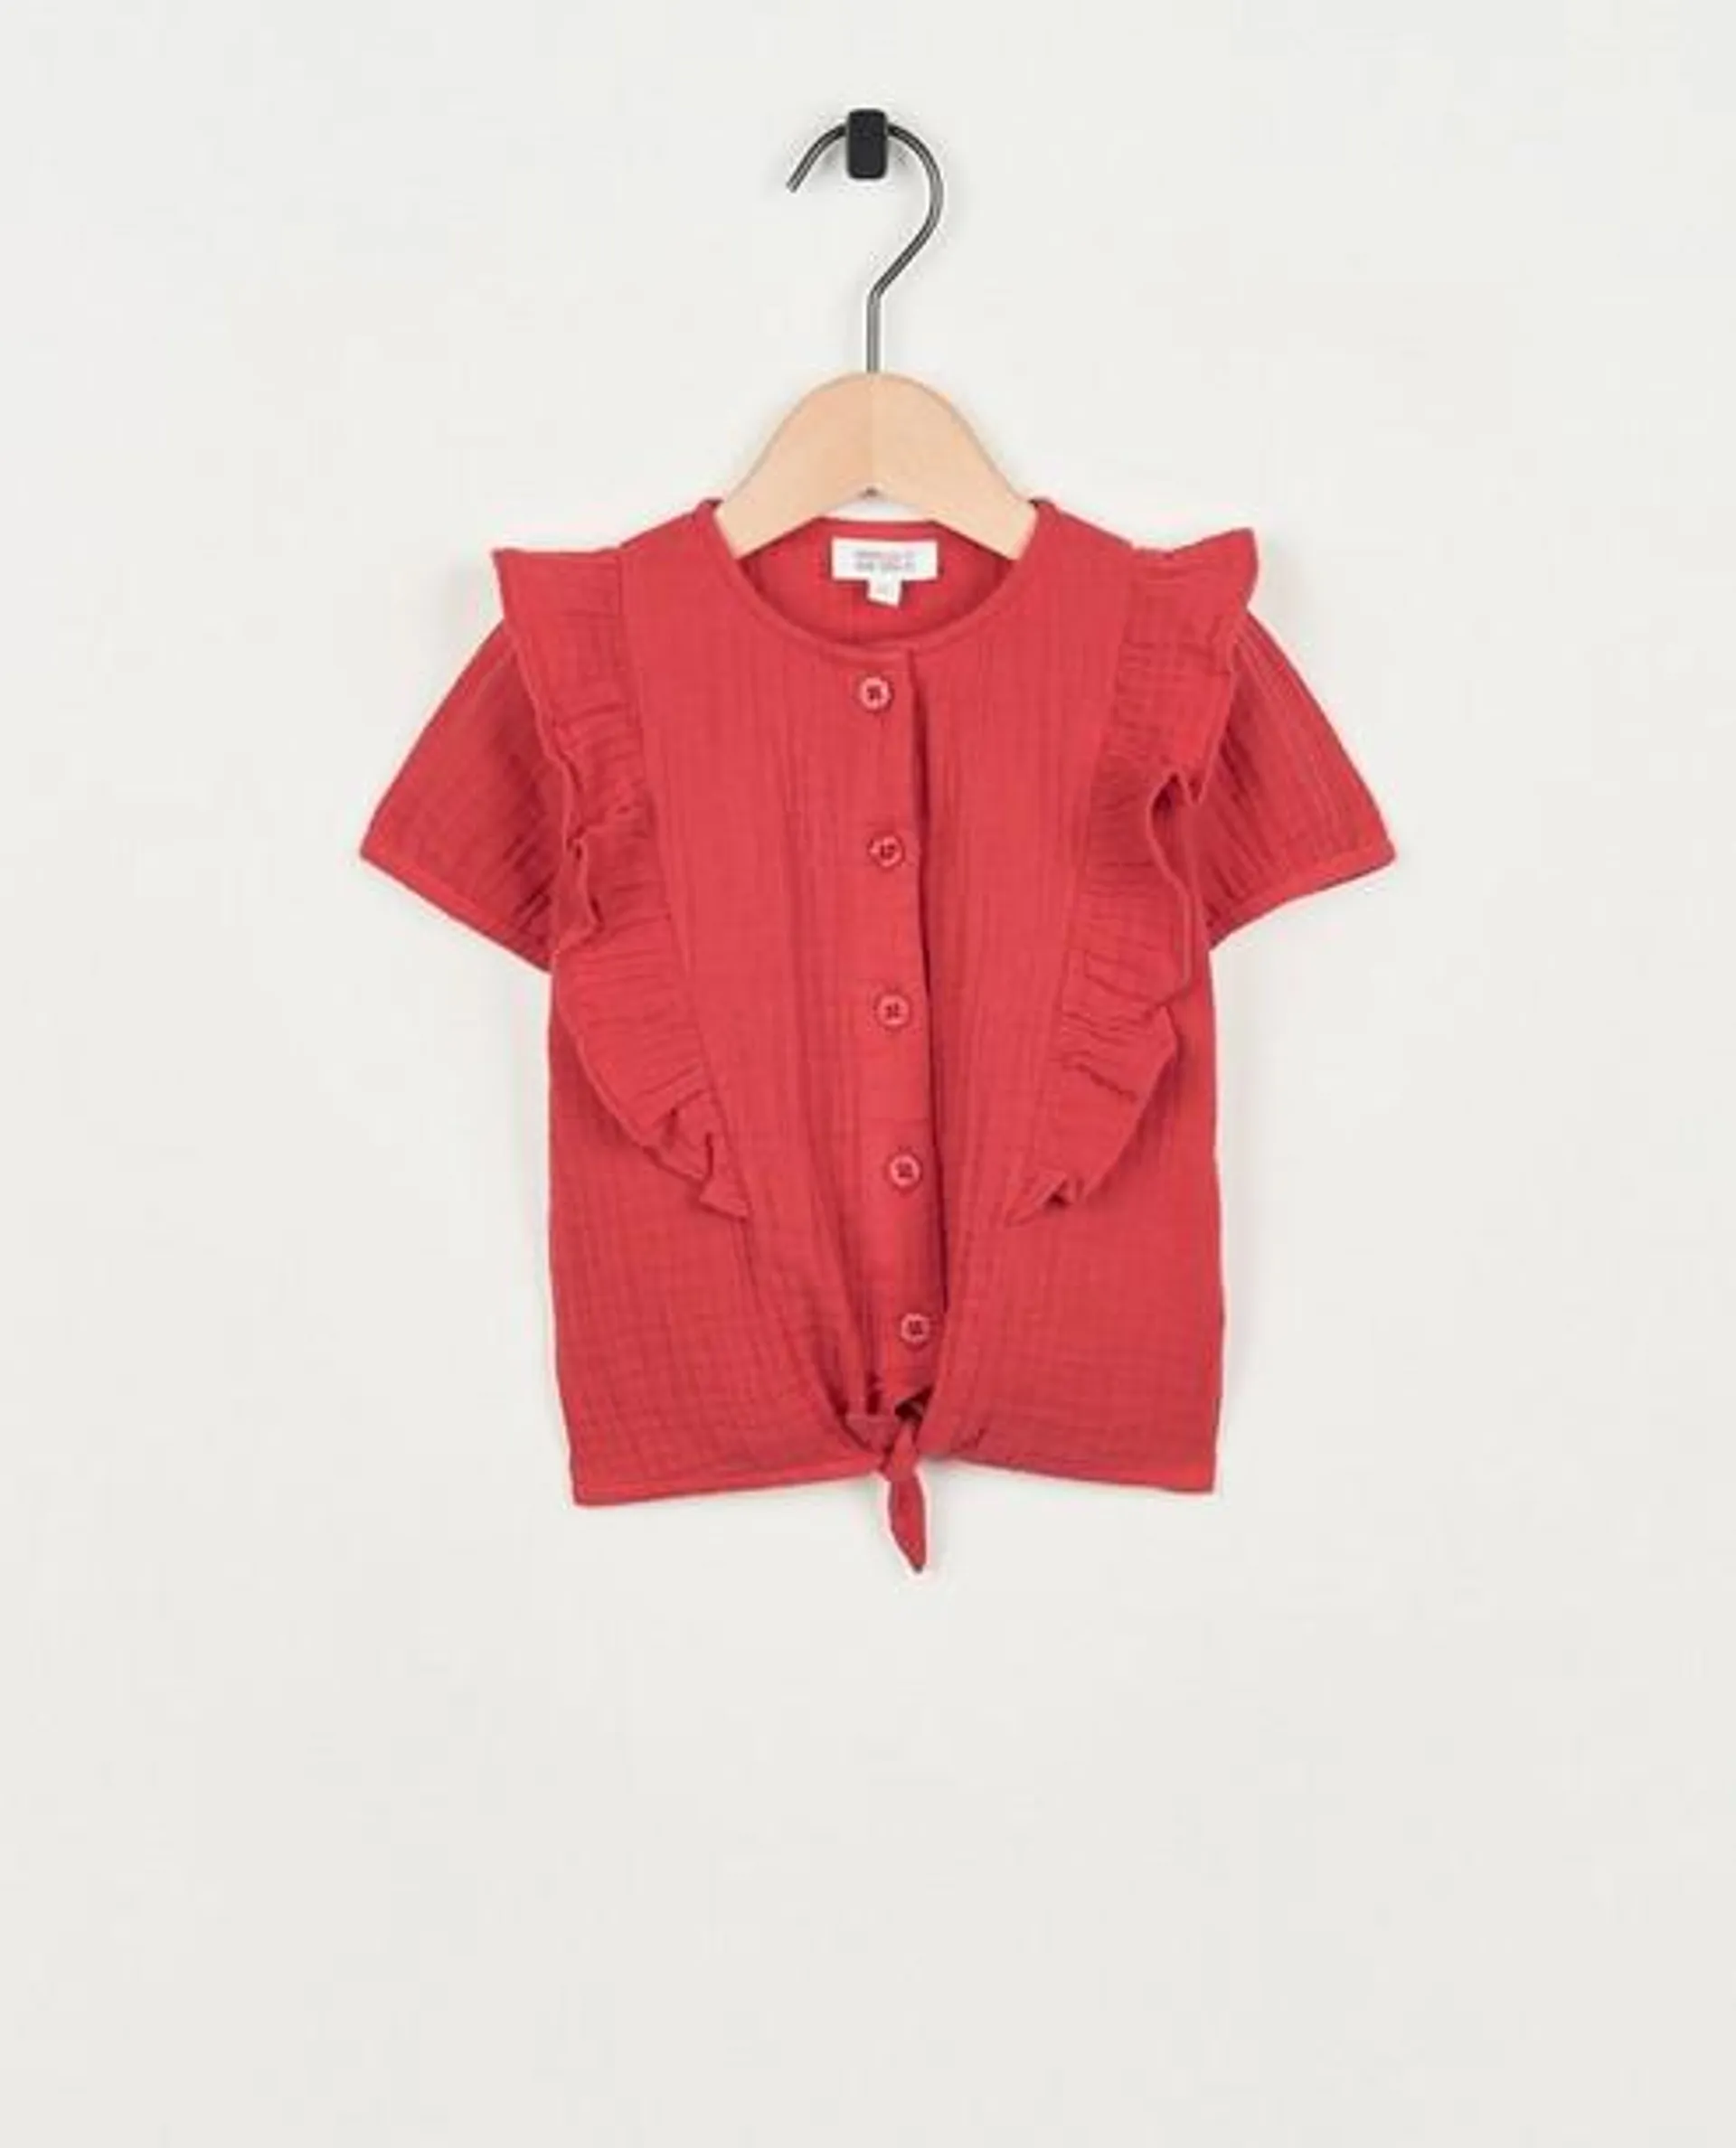 Rode blouse van tetra